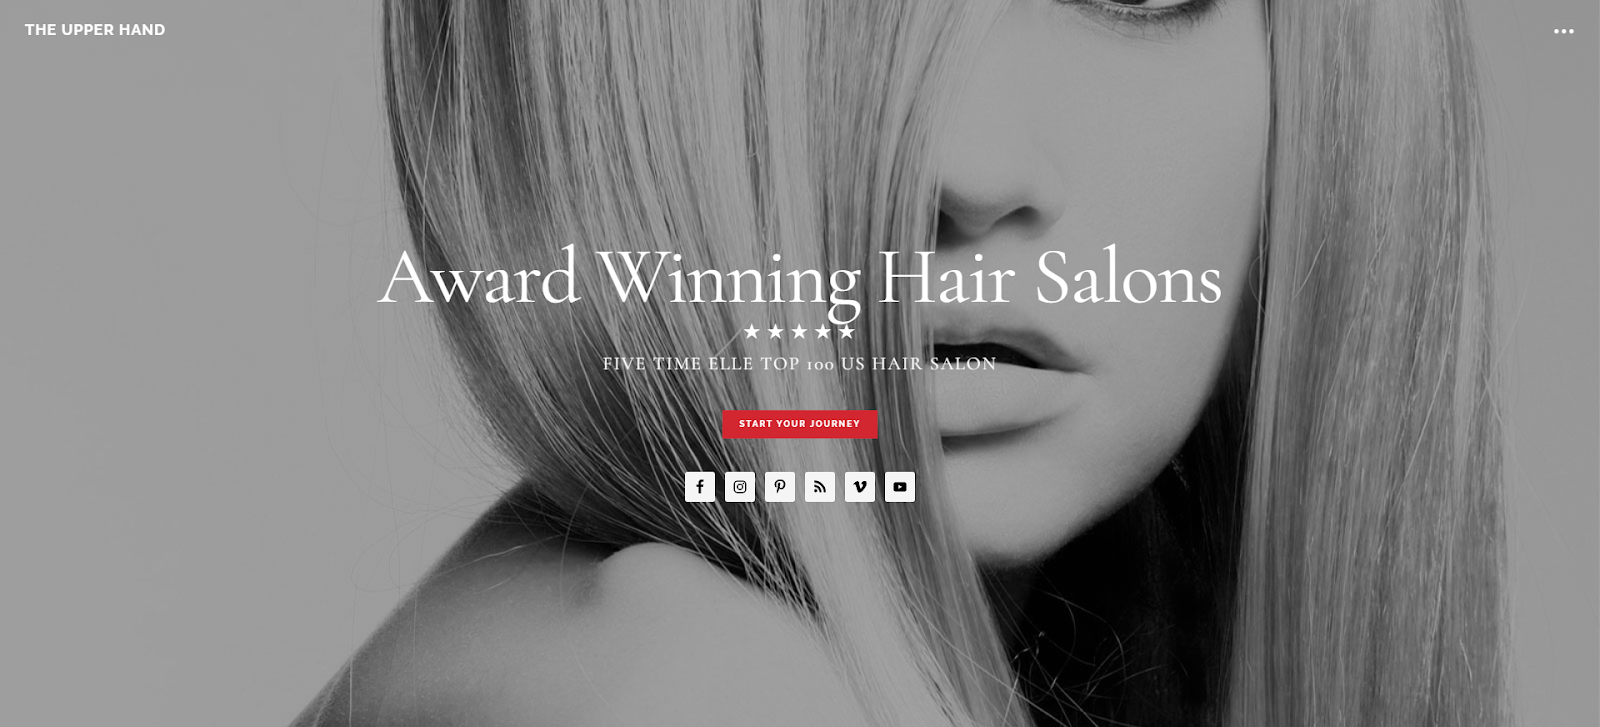 hair salon website, The Upper Hand